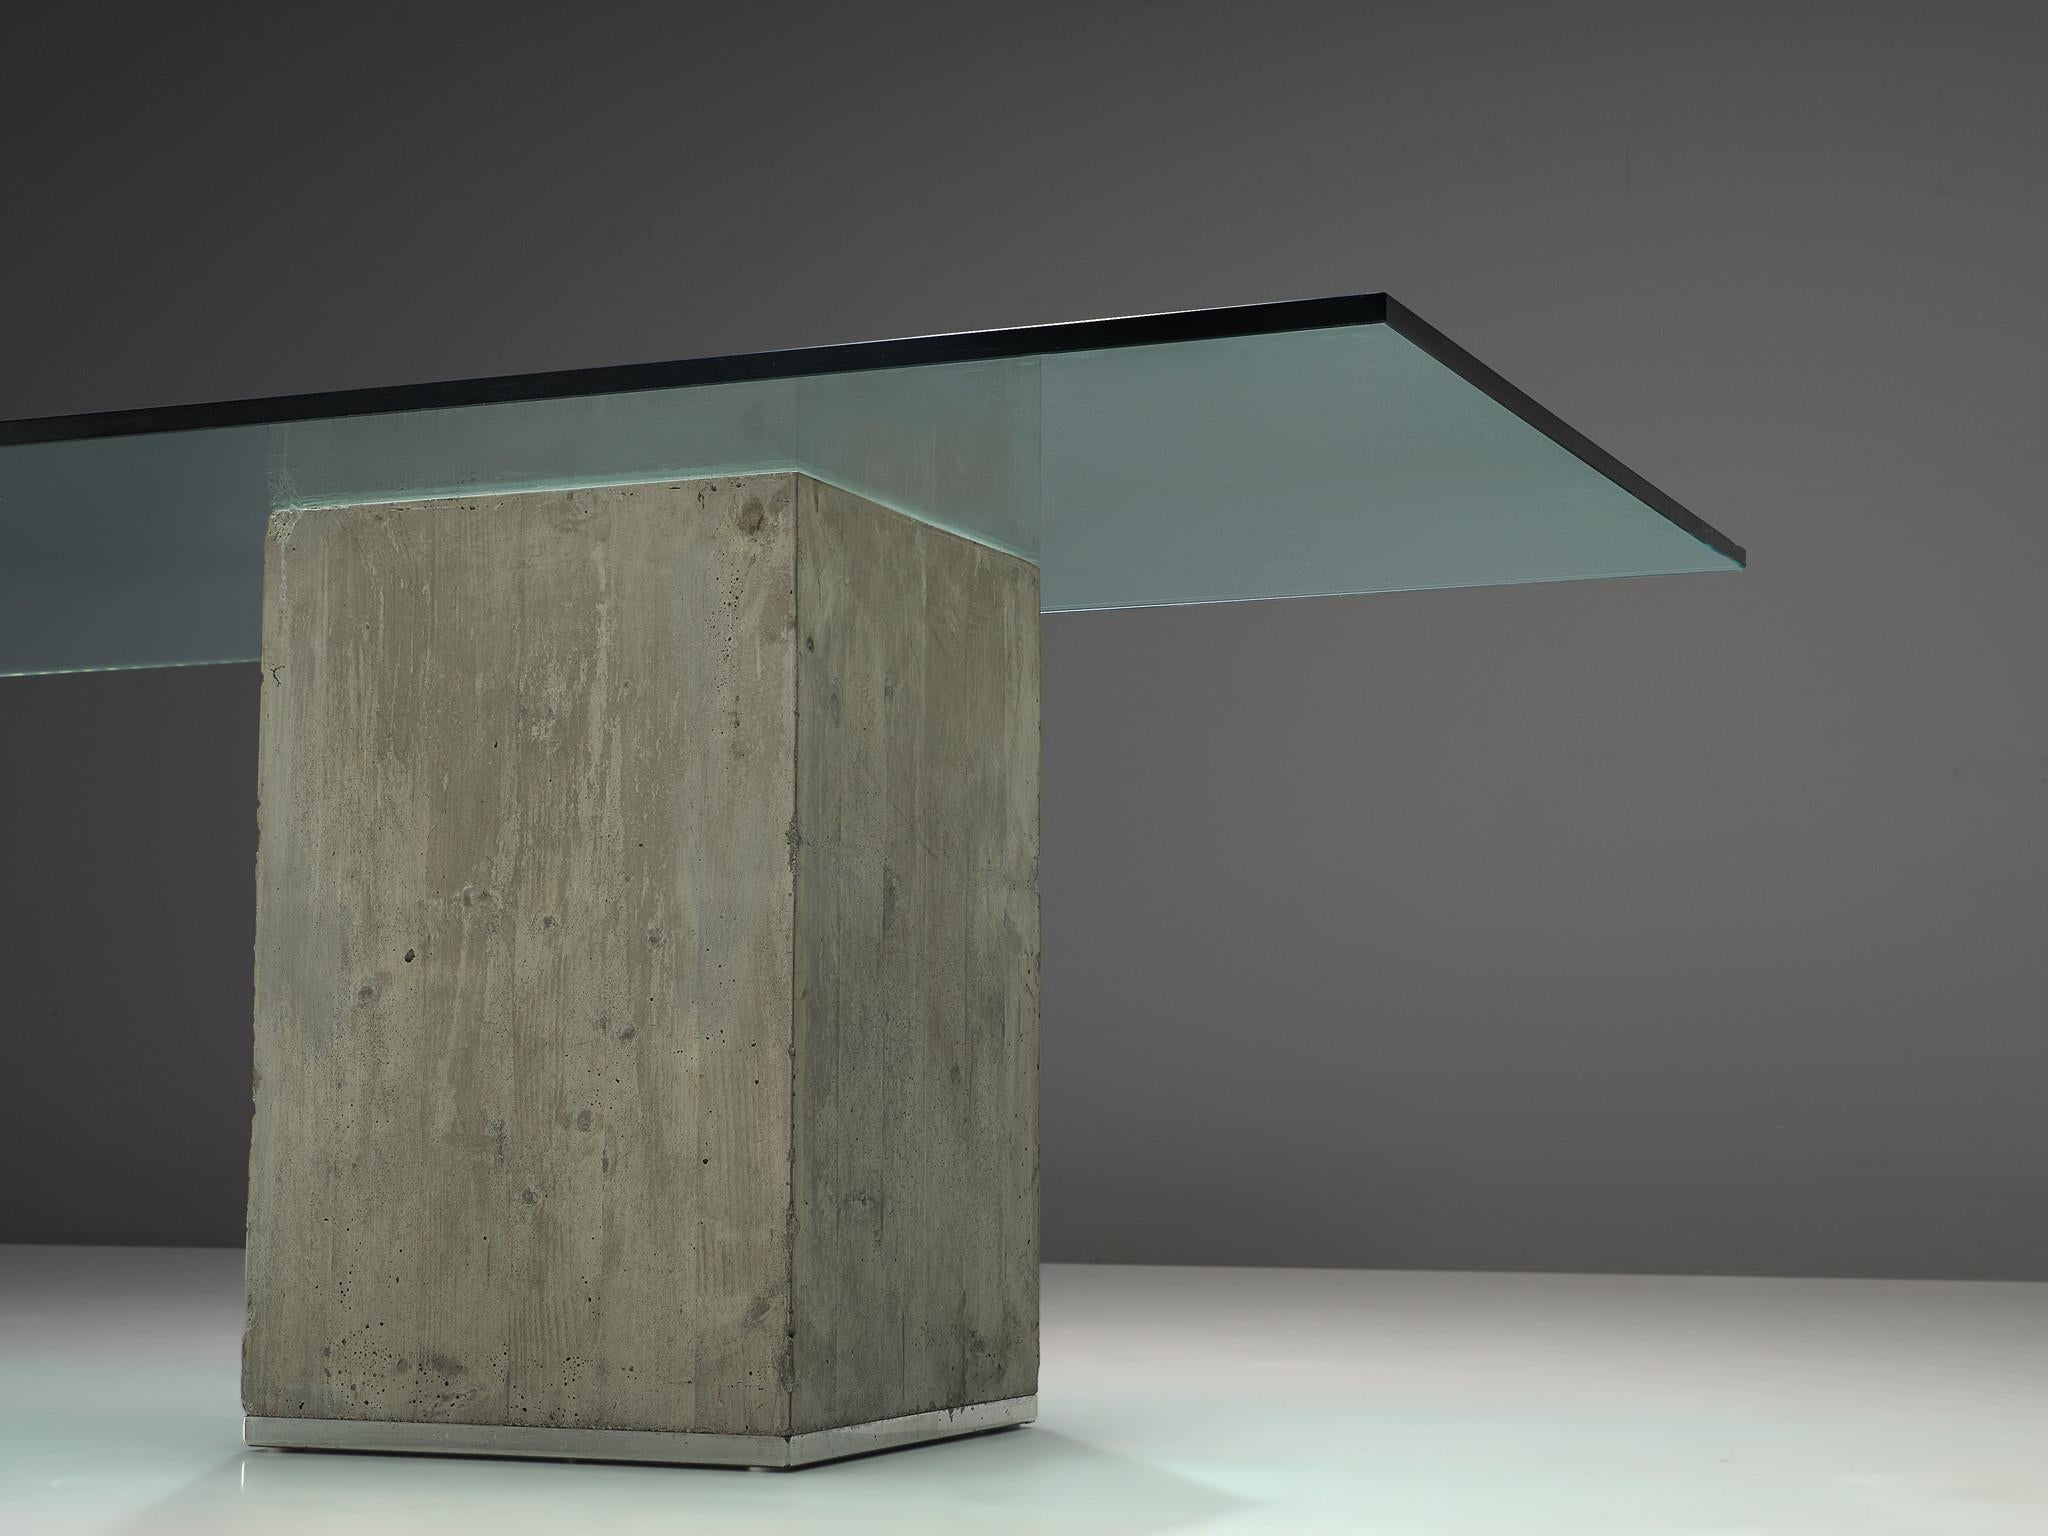 Italian Sergio & Giorgio Saporiti Dining Table in Glass and Concrete